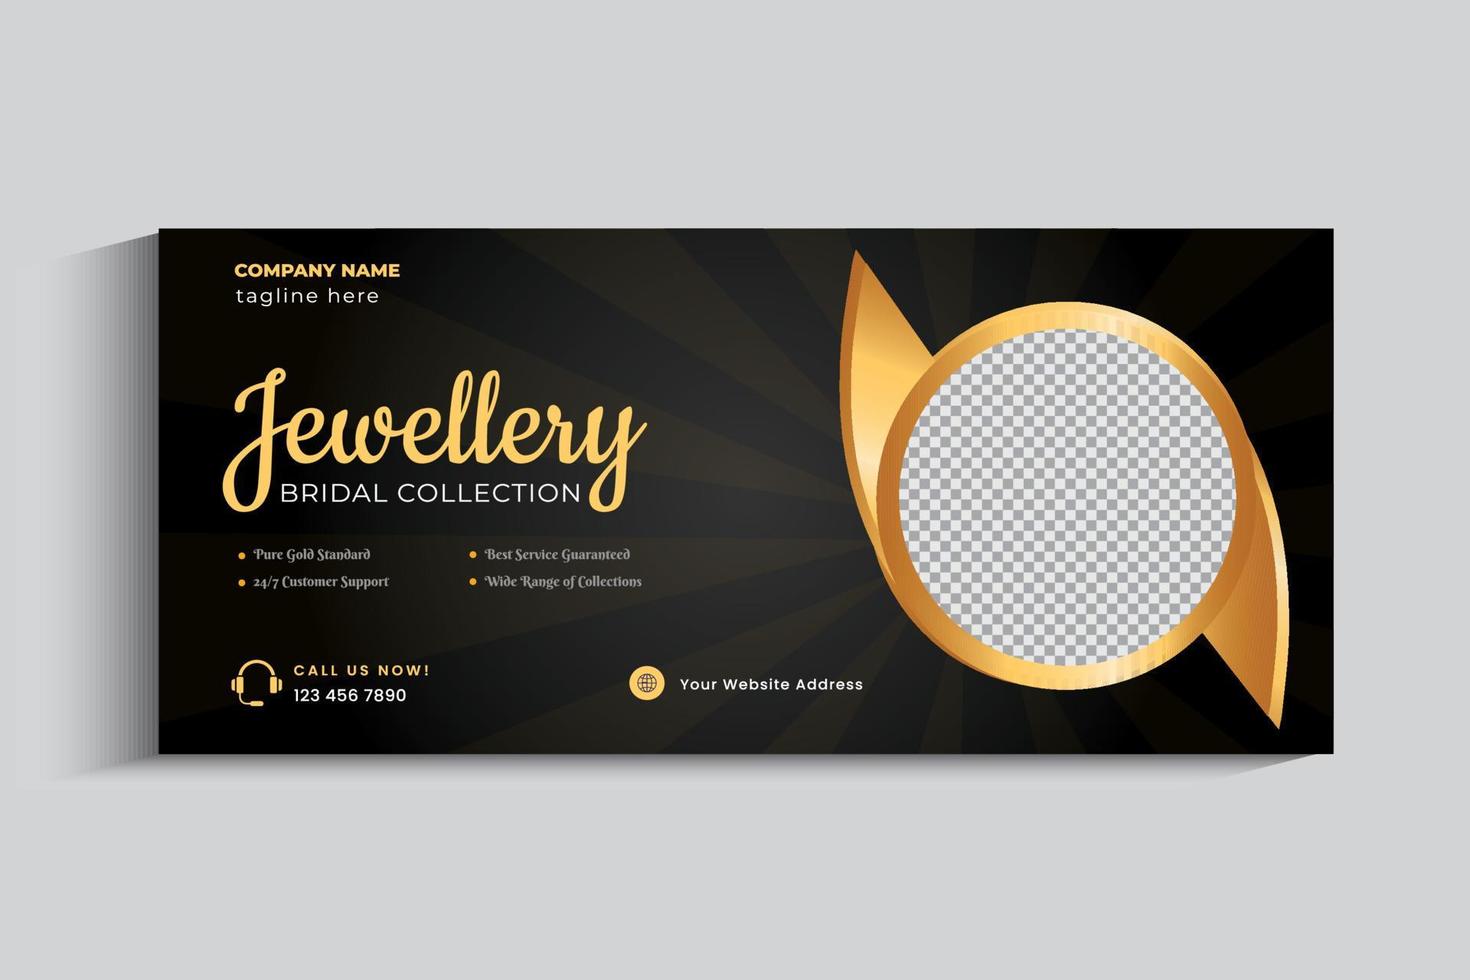 modèle de conception de bannière de couverture d'entreprise de bijoux. ornement en or sur les médias sociaux vecteur